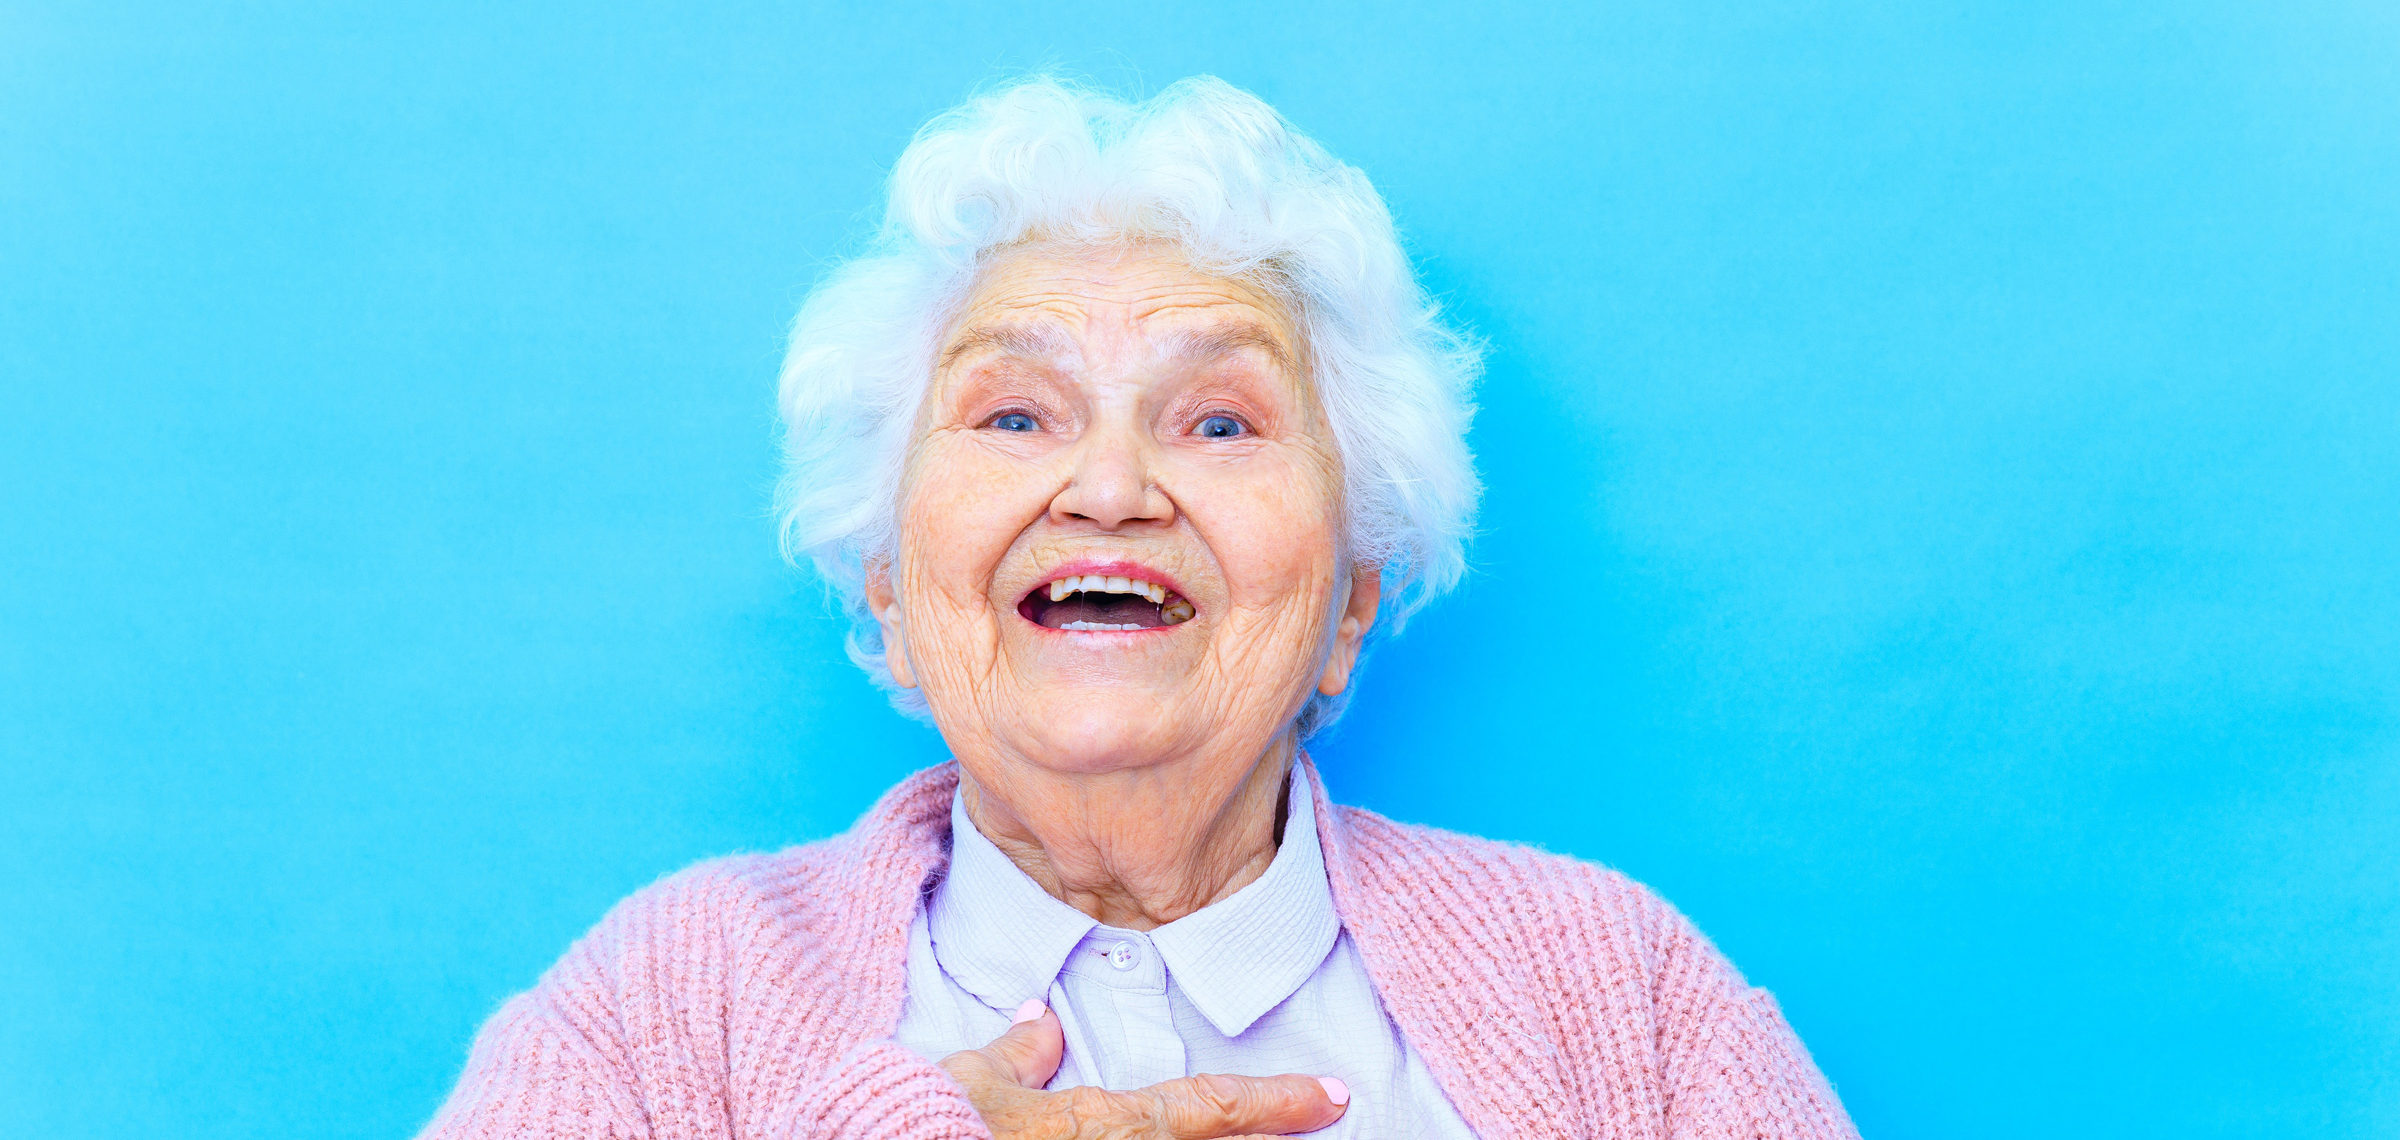 Äldre mormorsliknande kvinna i rosa kofta som skrattar och håller sig för bröstet.